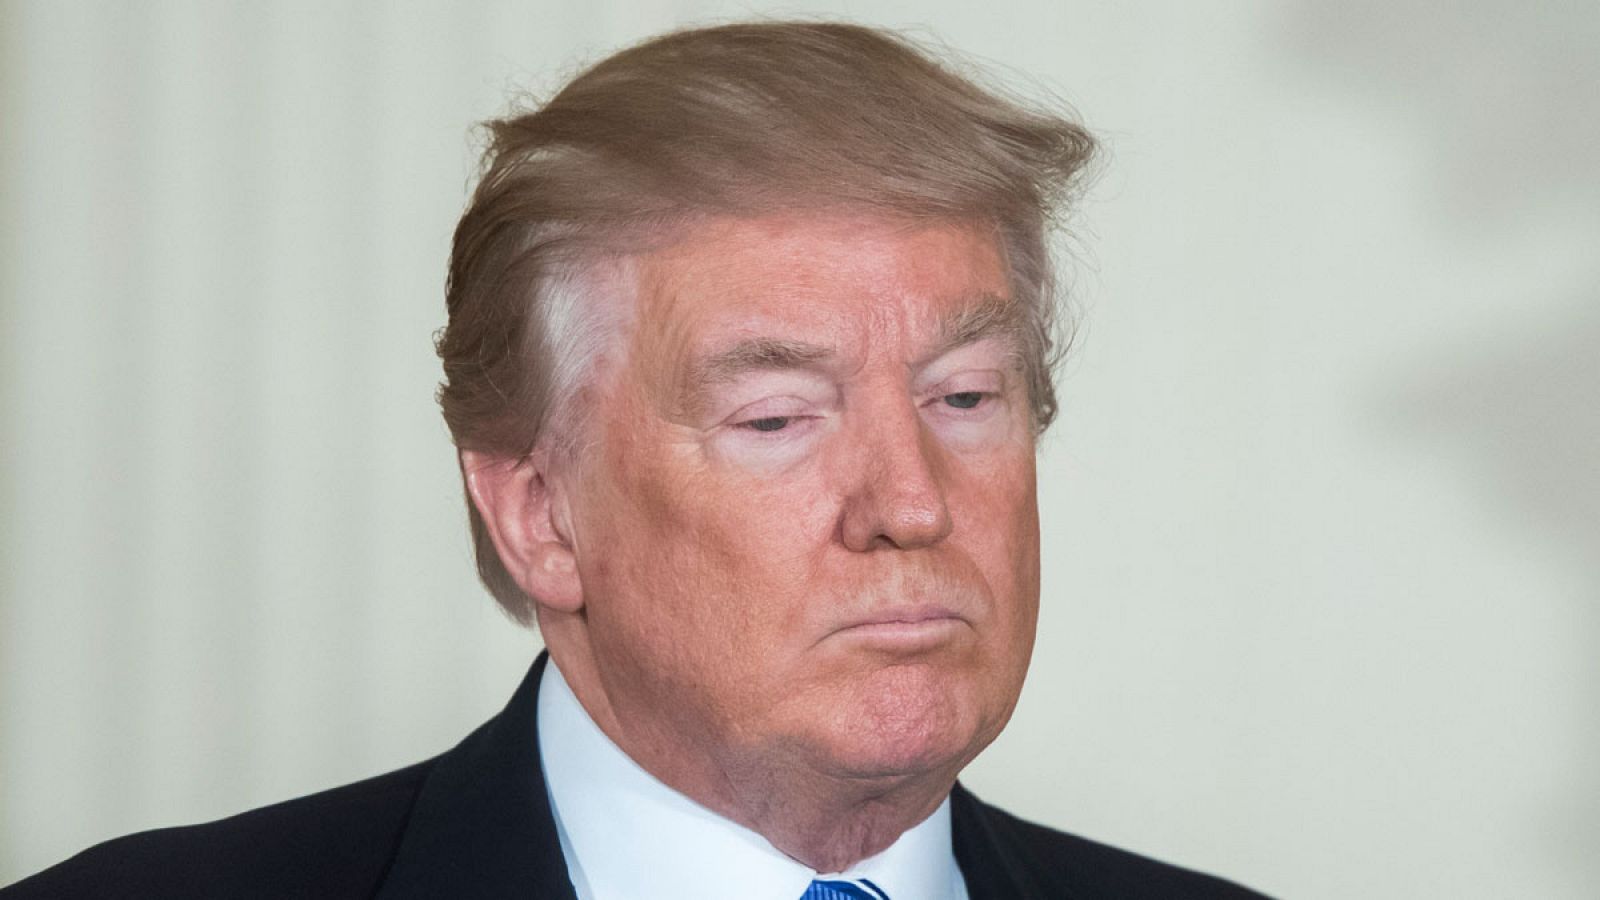 Trump durante una comparecencia en la Casa Blanca el viernes 23 de junio de 2017.